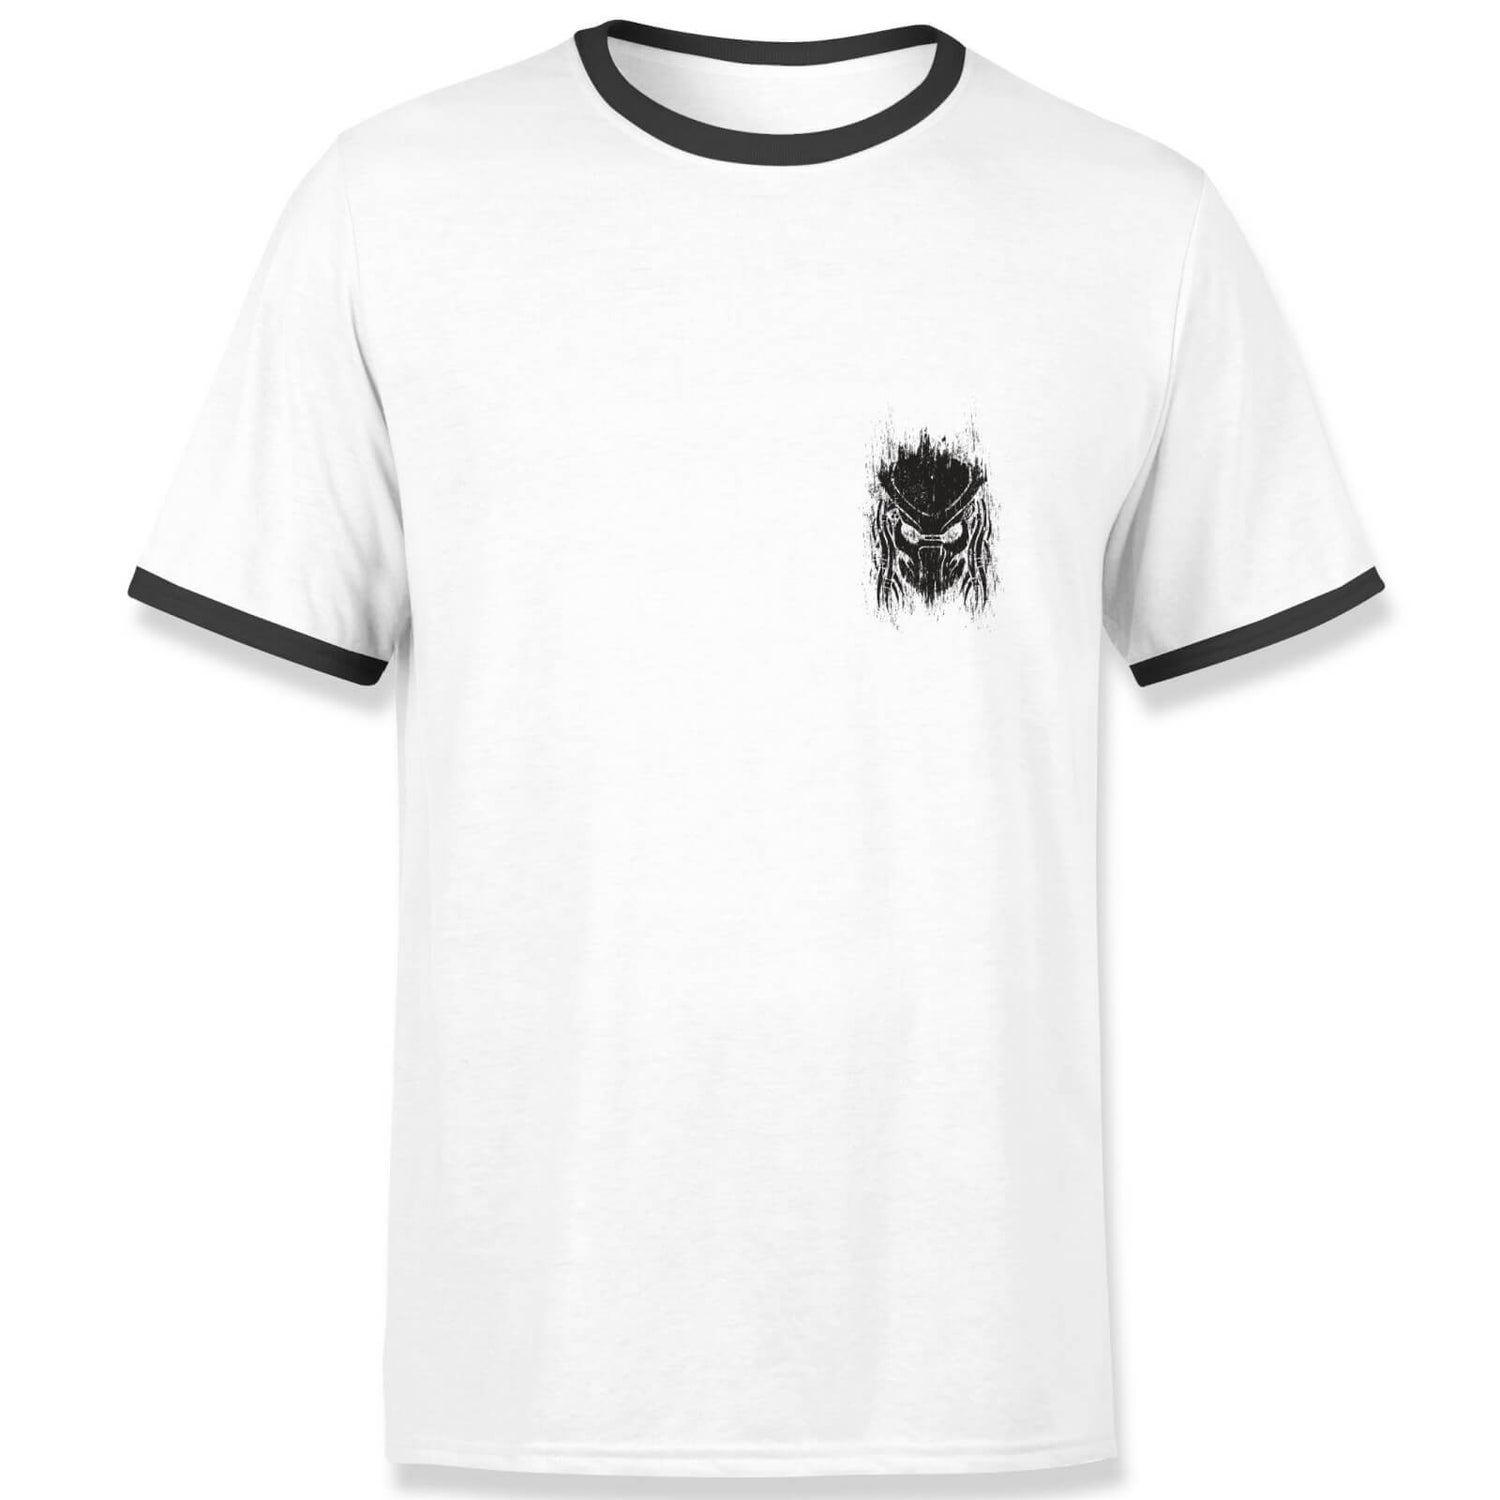 Predator Helm And Spine Men's Ringer T-Shirt - White/Black